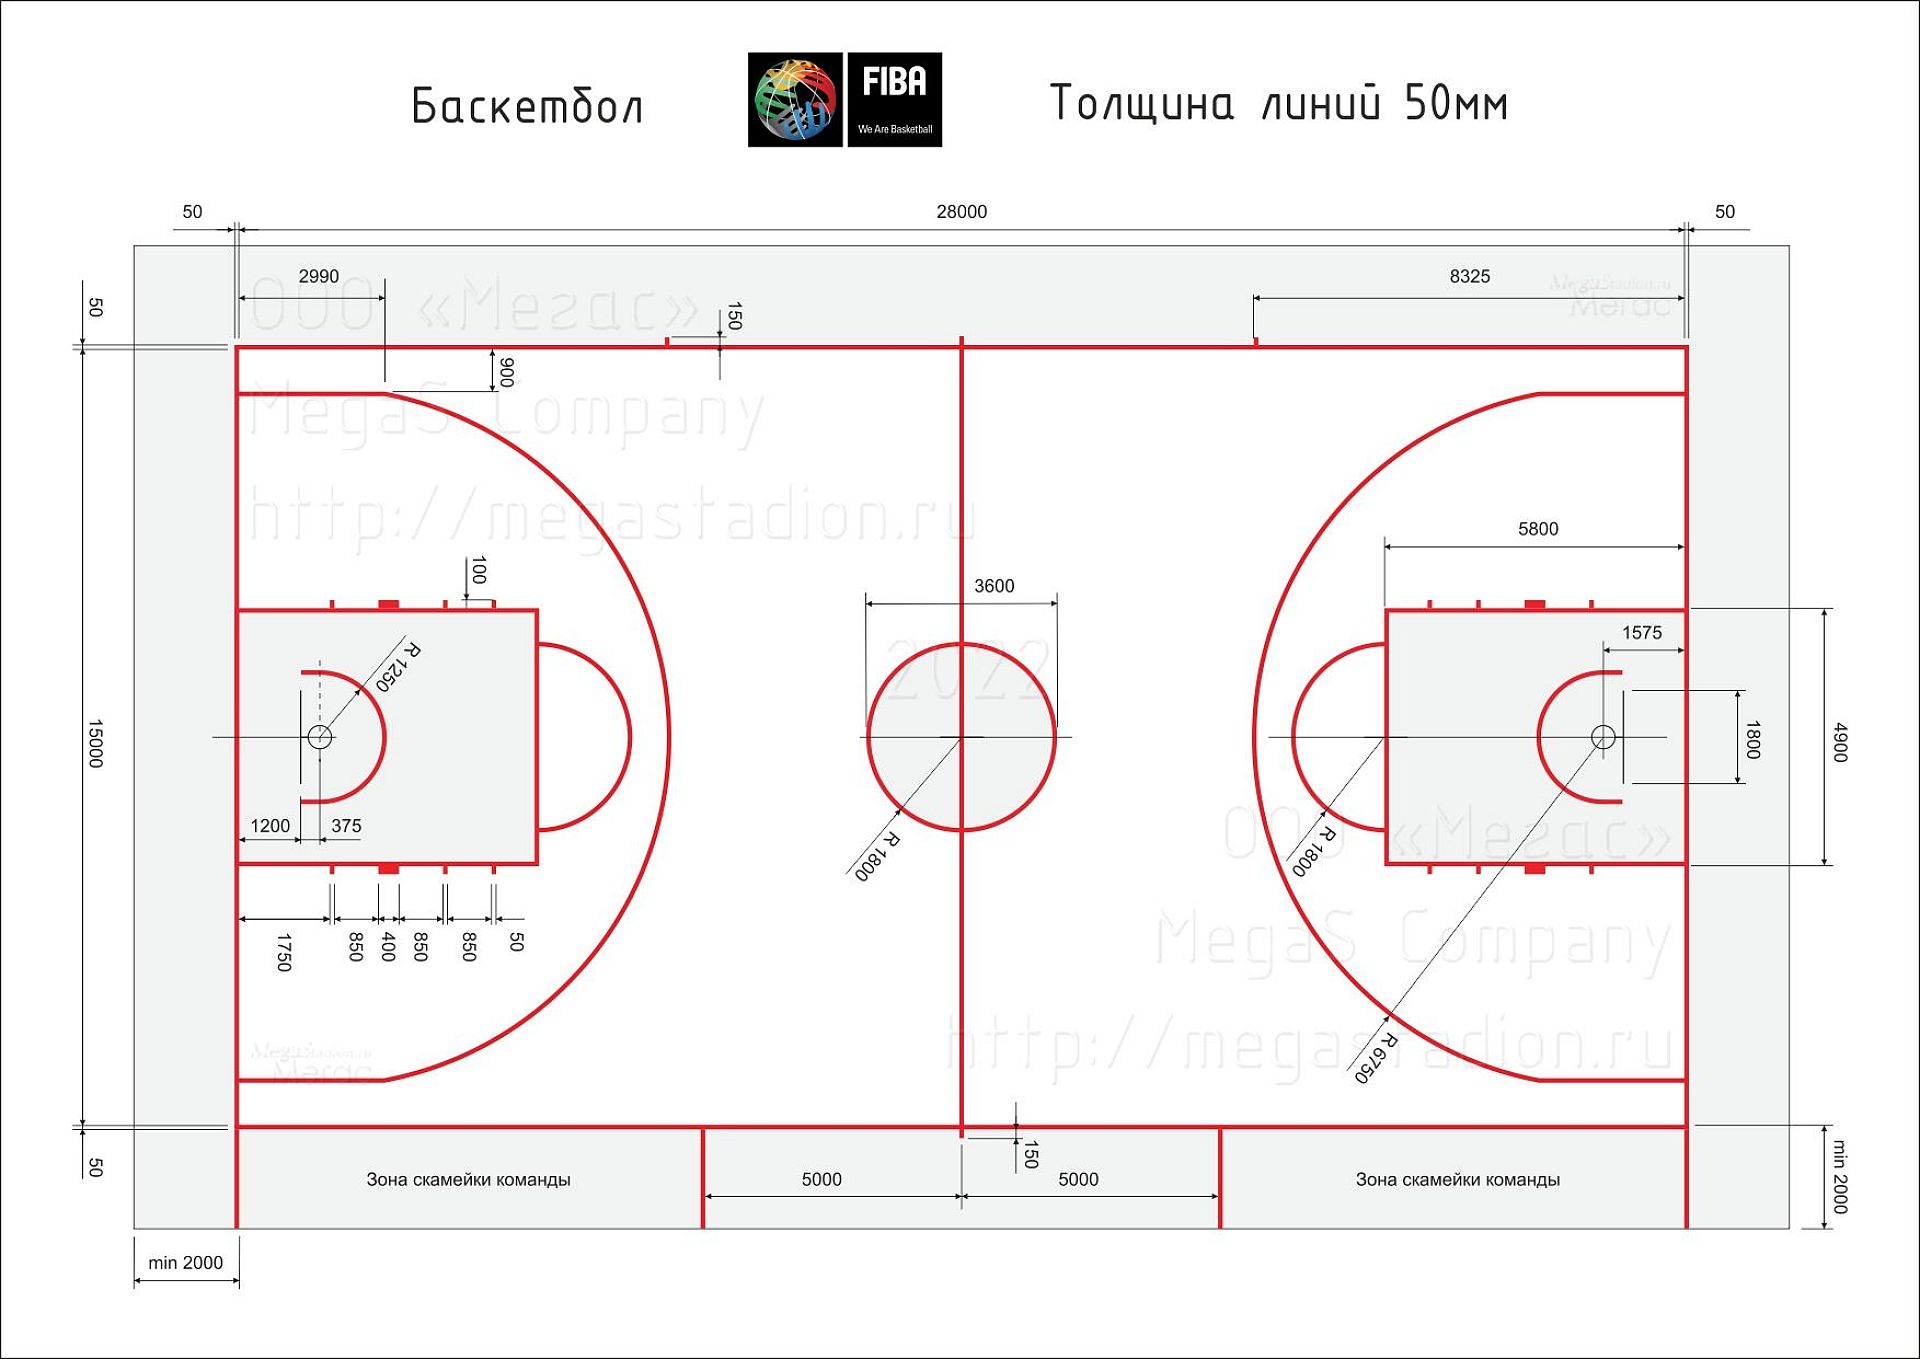 Схема разметки баскетбольной площадки по правилам ФИБА (FIBA)